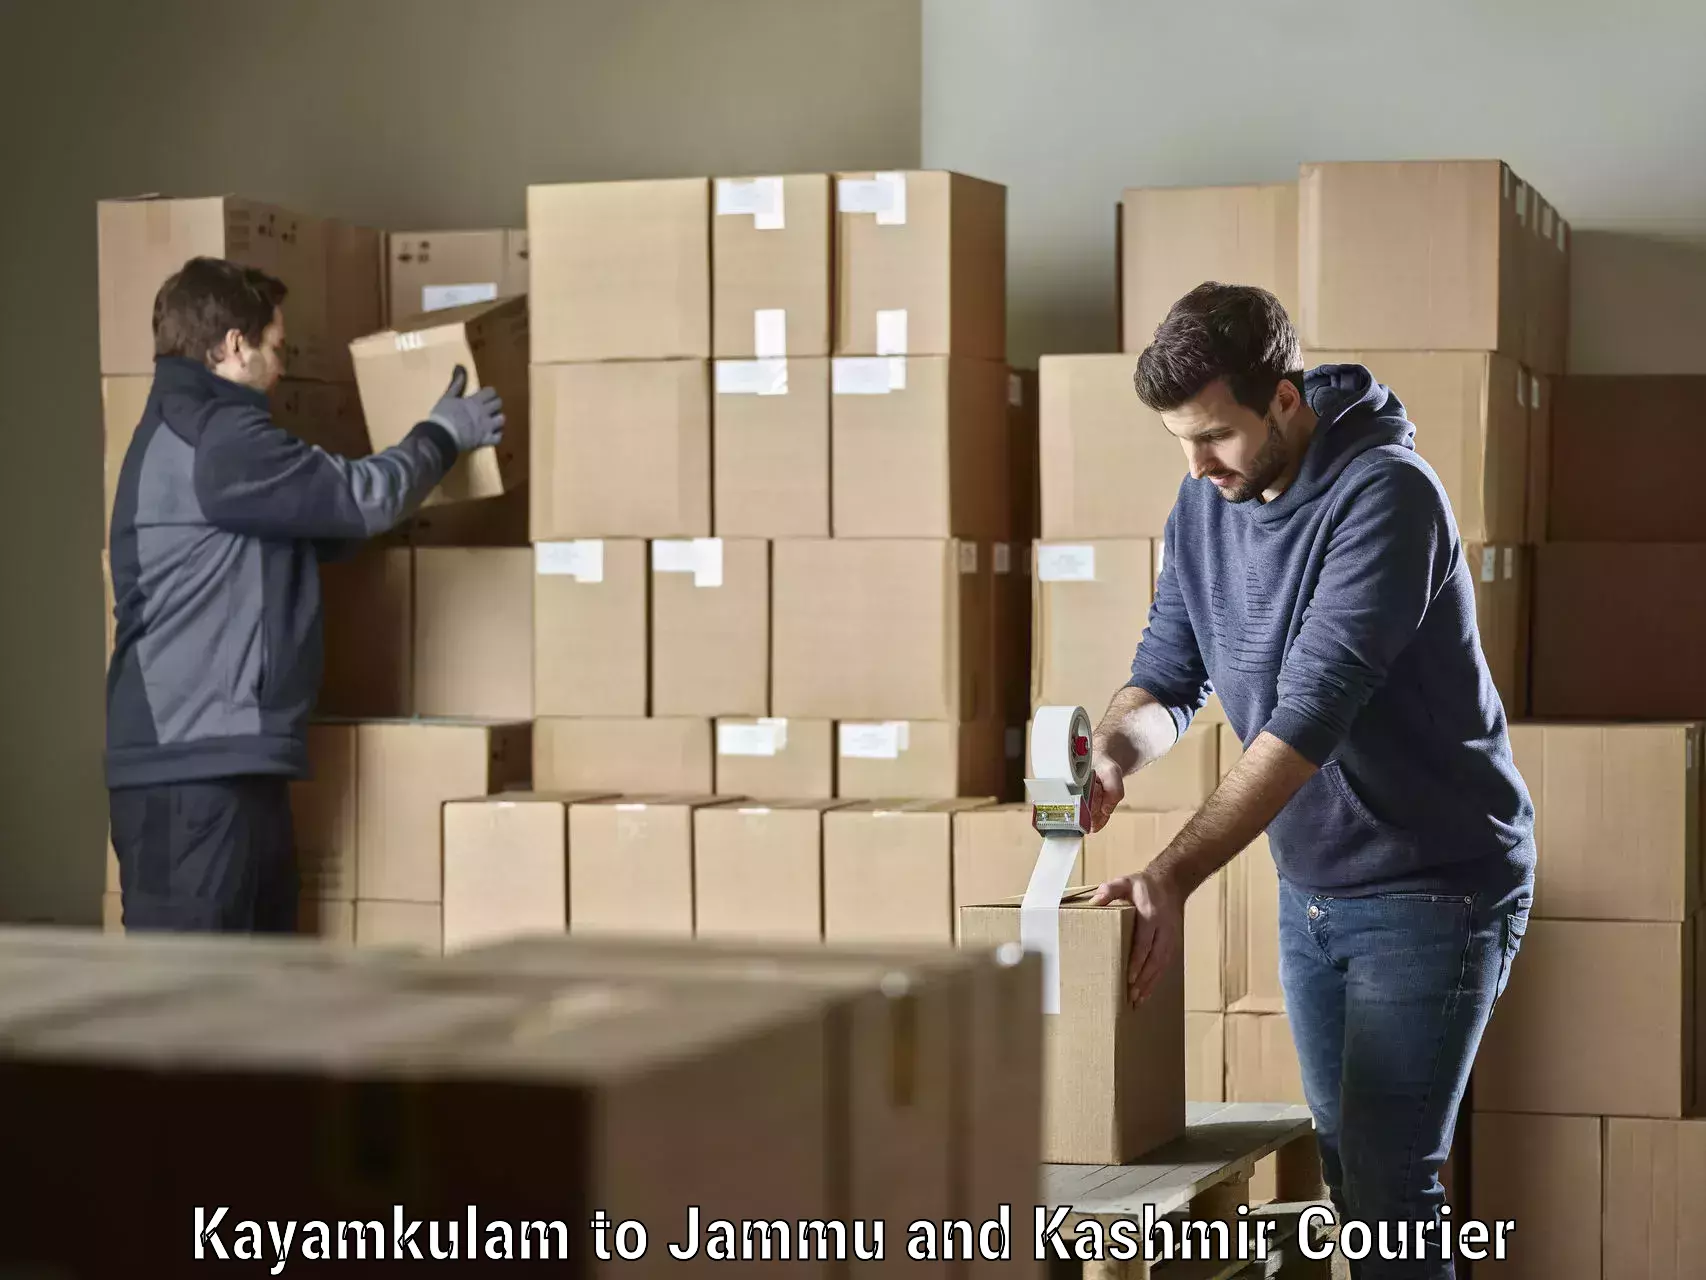 Versatile courier offerings Kayamkulam to Rajouri